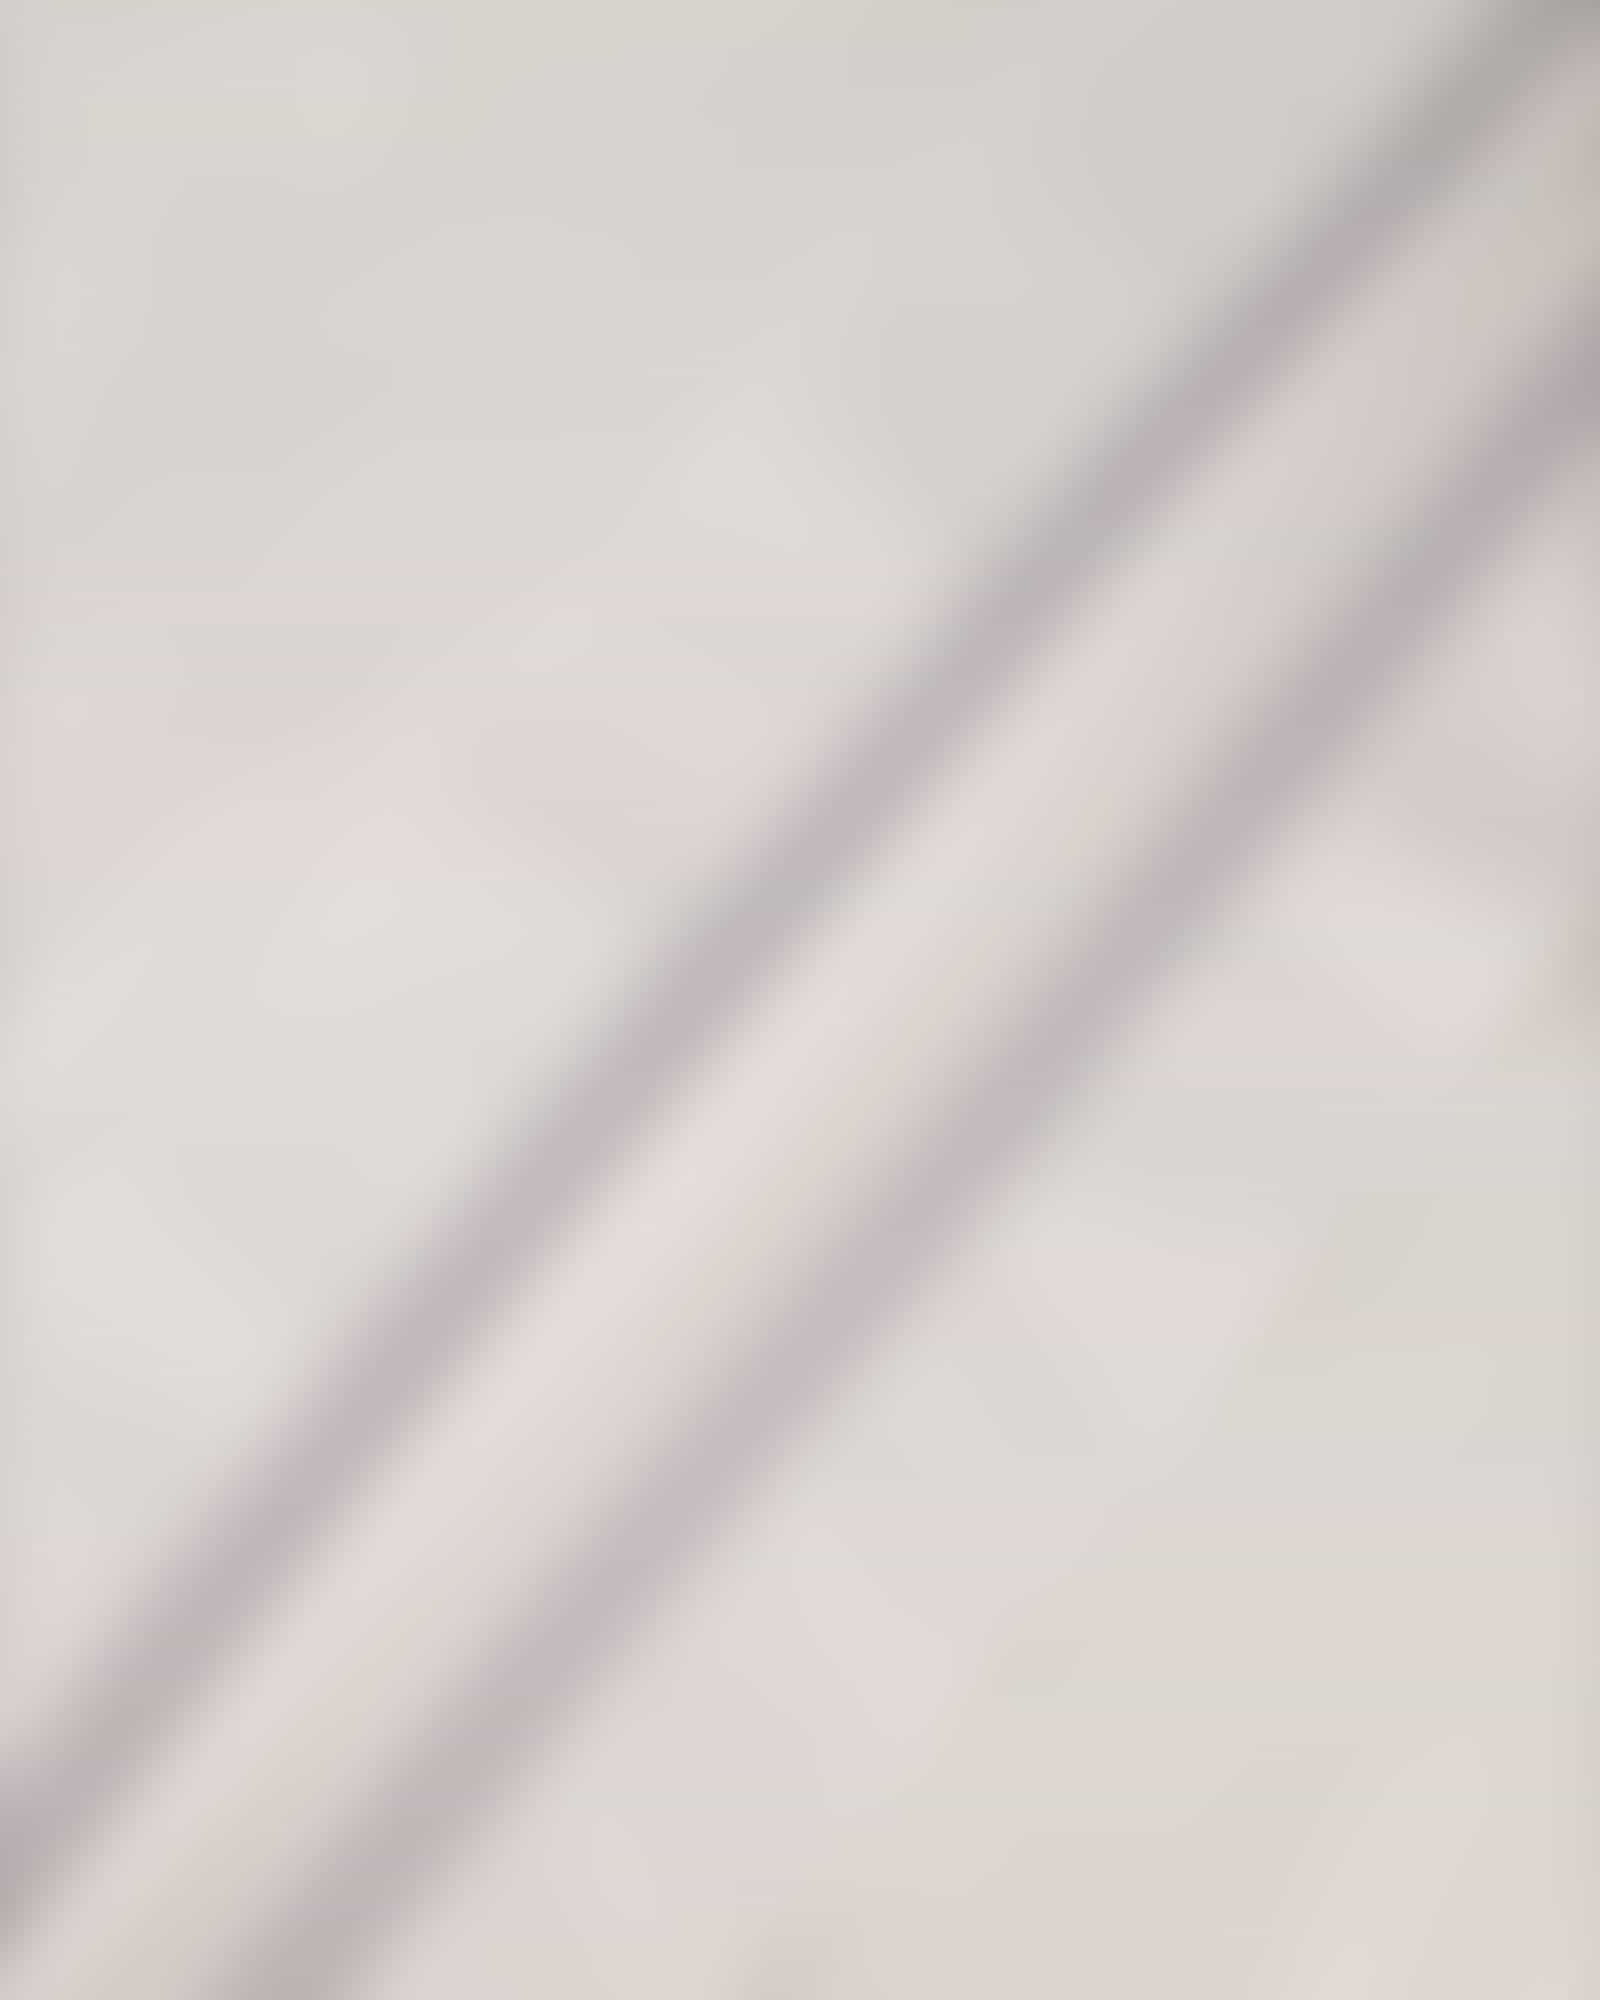 JOOP Herren Bademantel Kimono Pique 1656 - Farbe: Weiß - 600 - S